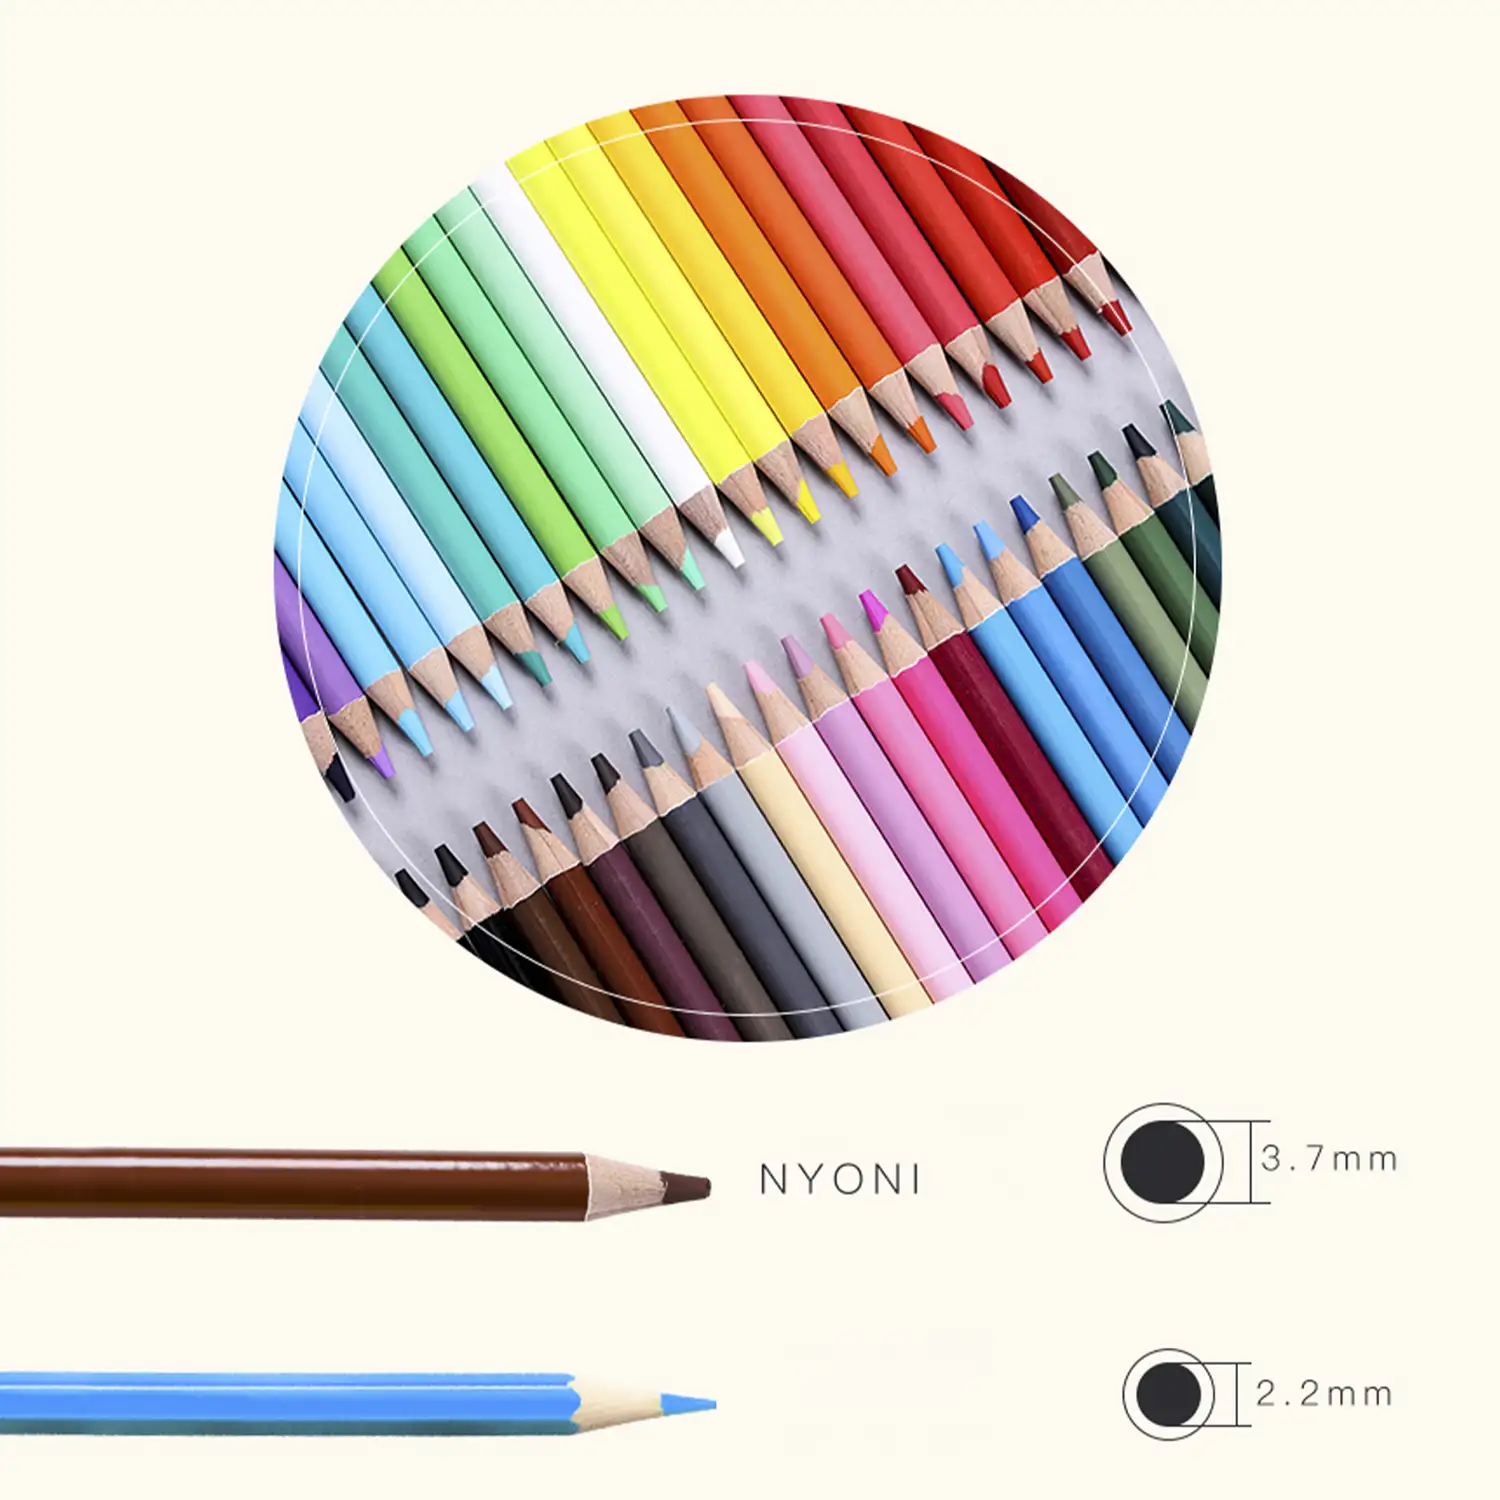 Set de 36 lápices de colores. Fabricados en madera, forma redonda profesional.